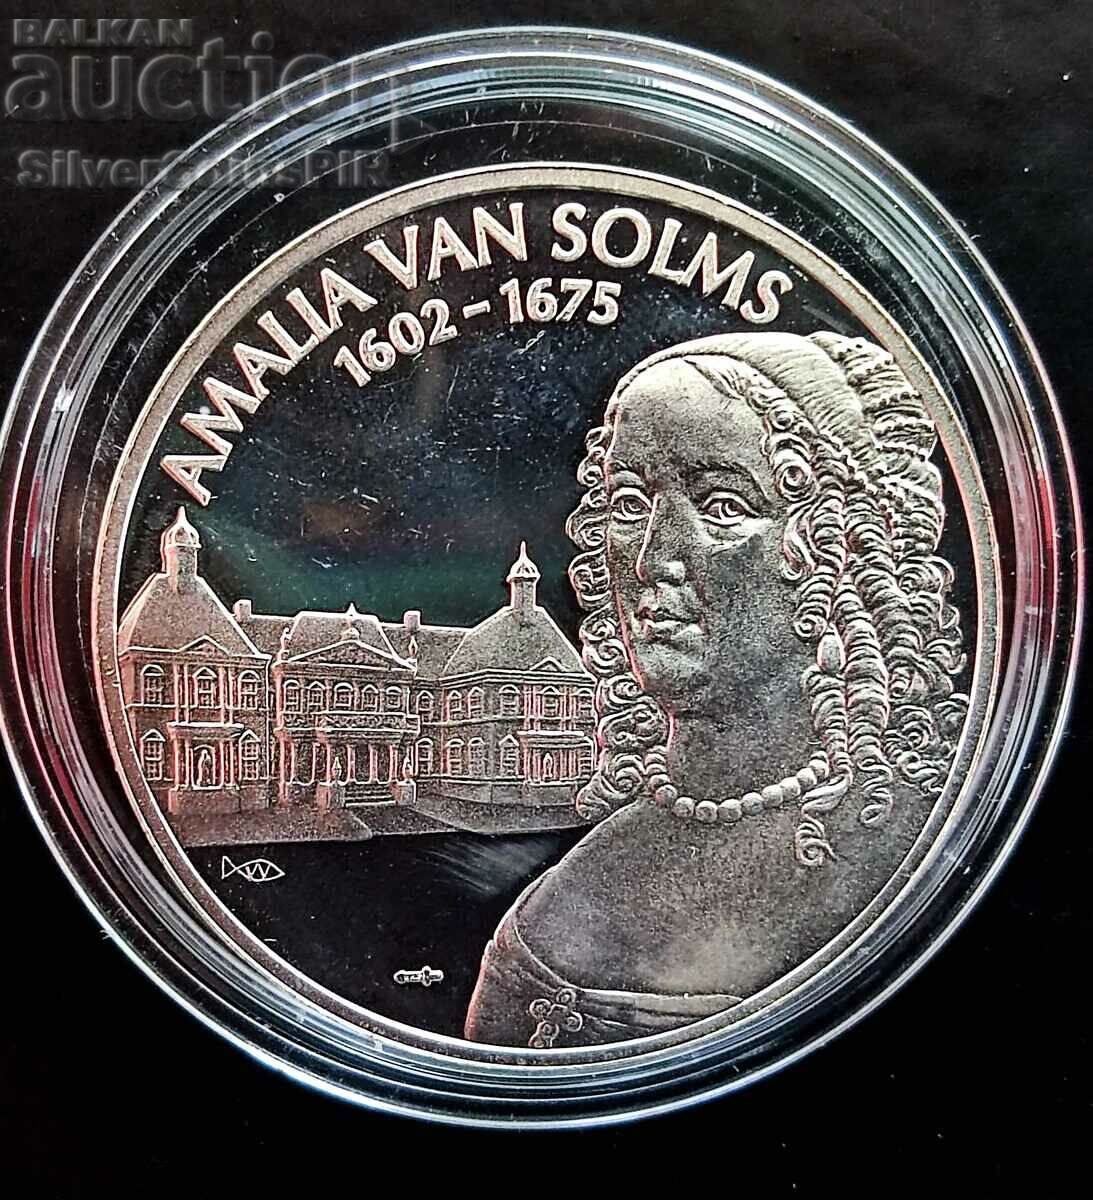 Silver Medal Amelia van Sooms Netherlands